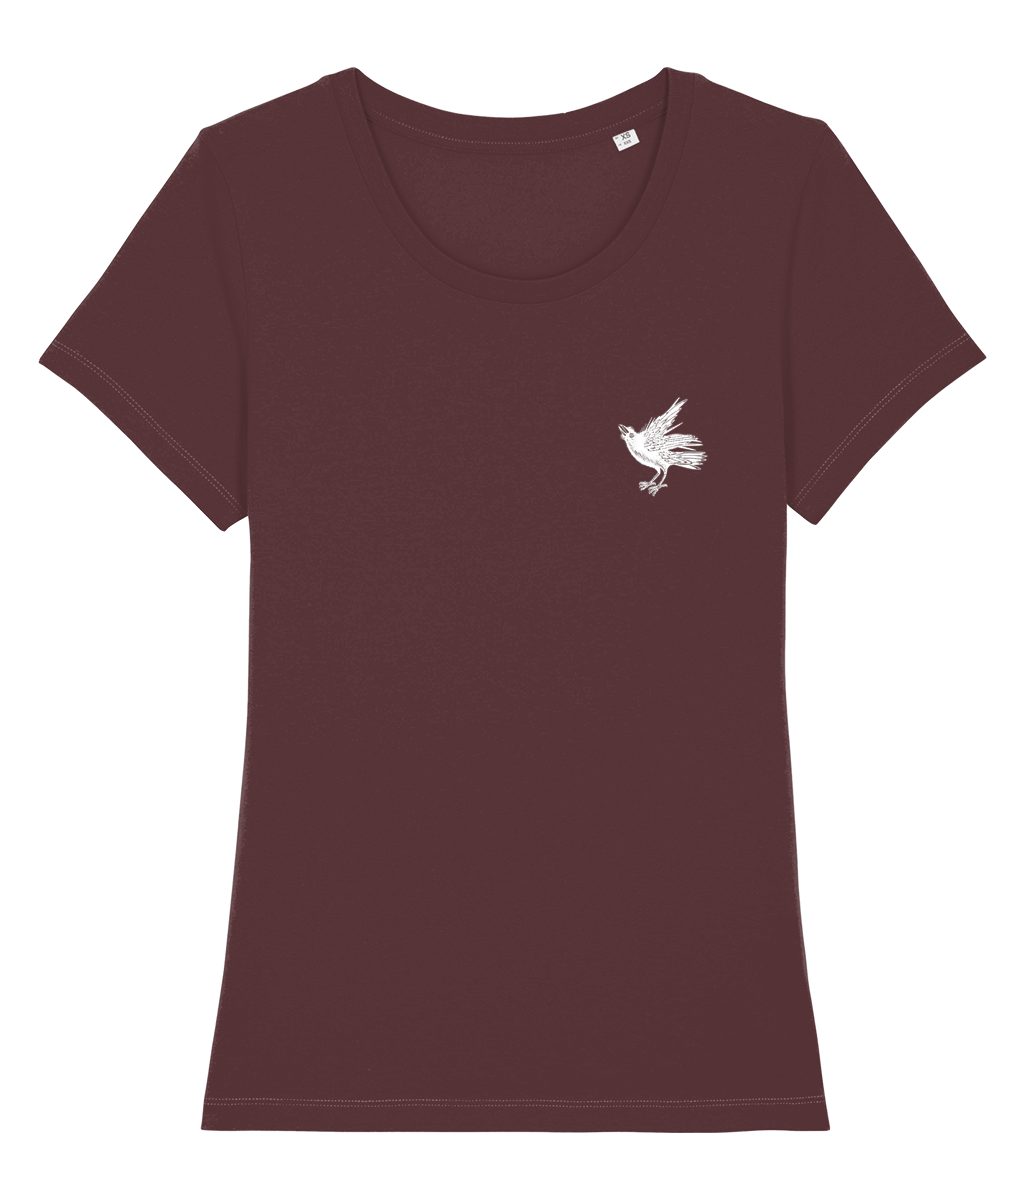 Women's Tshirt - Signature White Crow